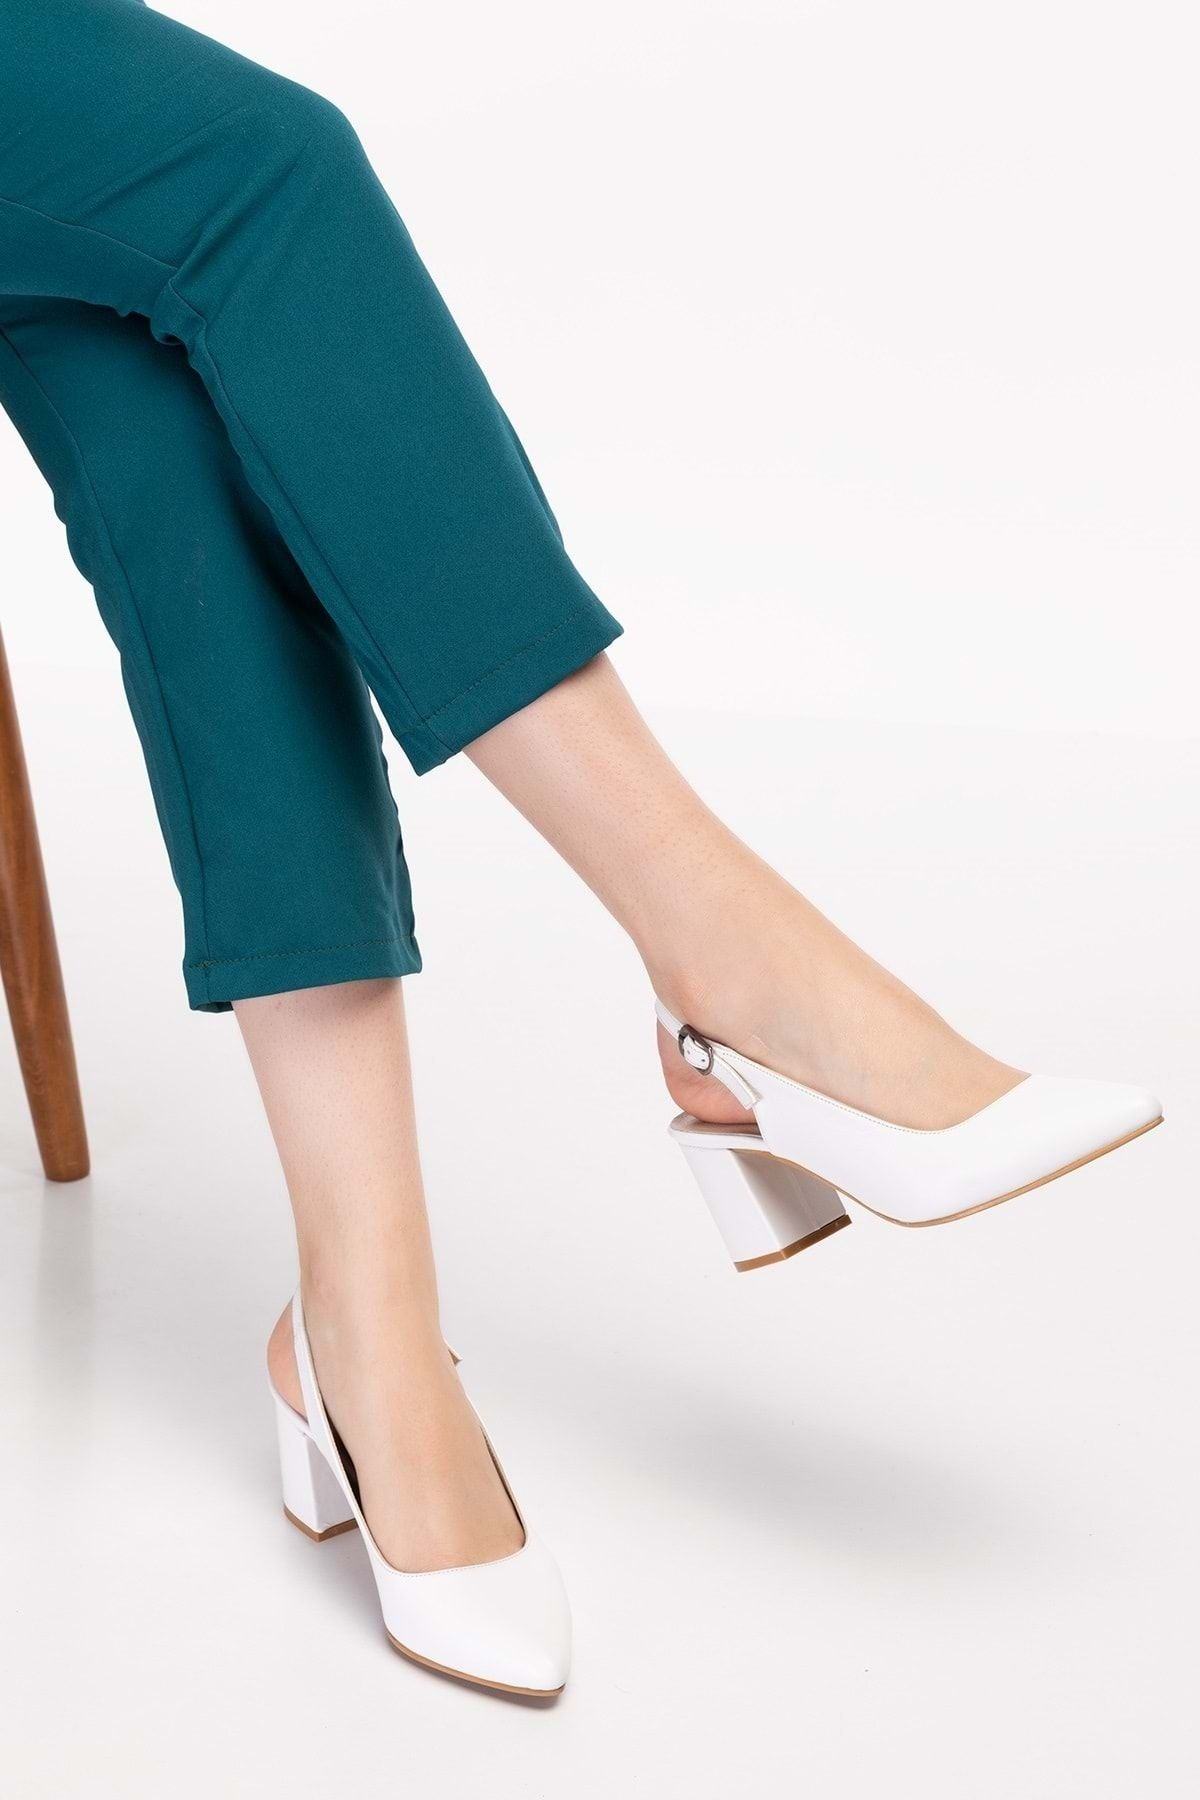 Gondol Kadın Hakiki Deri Klasik Topuklu Ayakkabı Şhn.0034 - Beyaz - 38